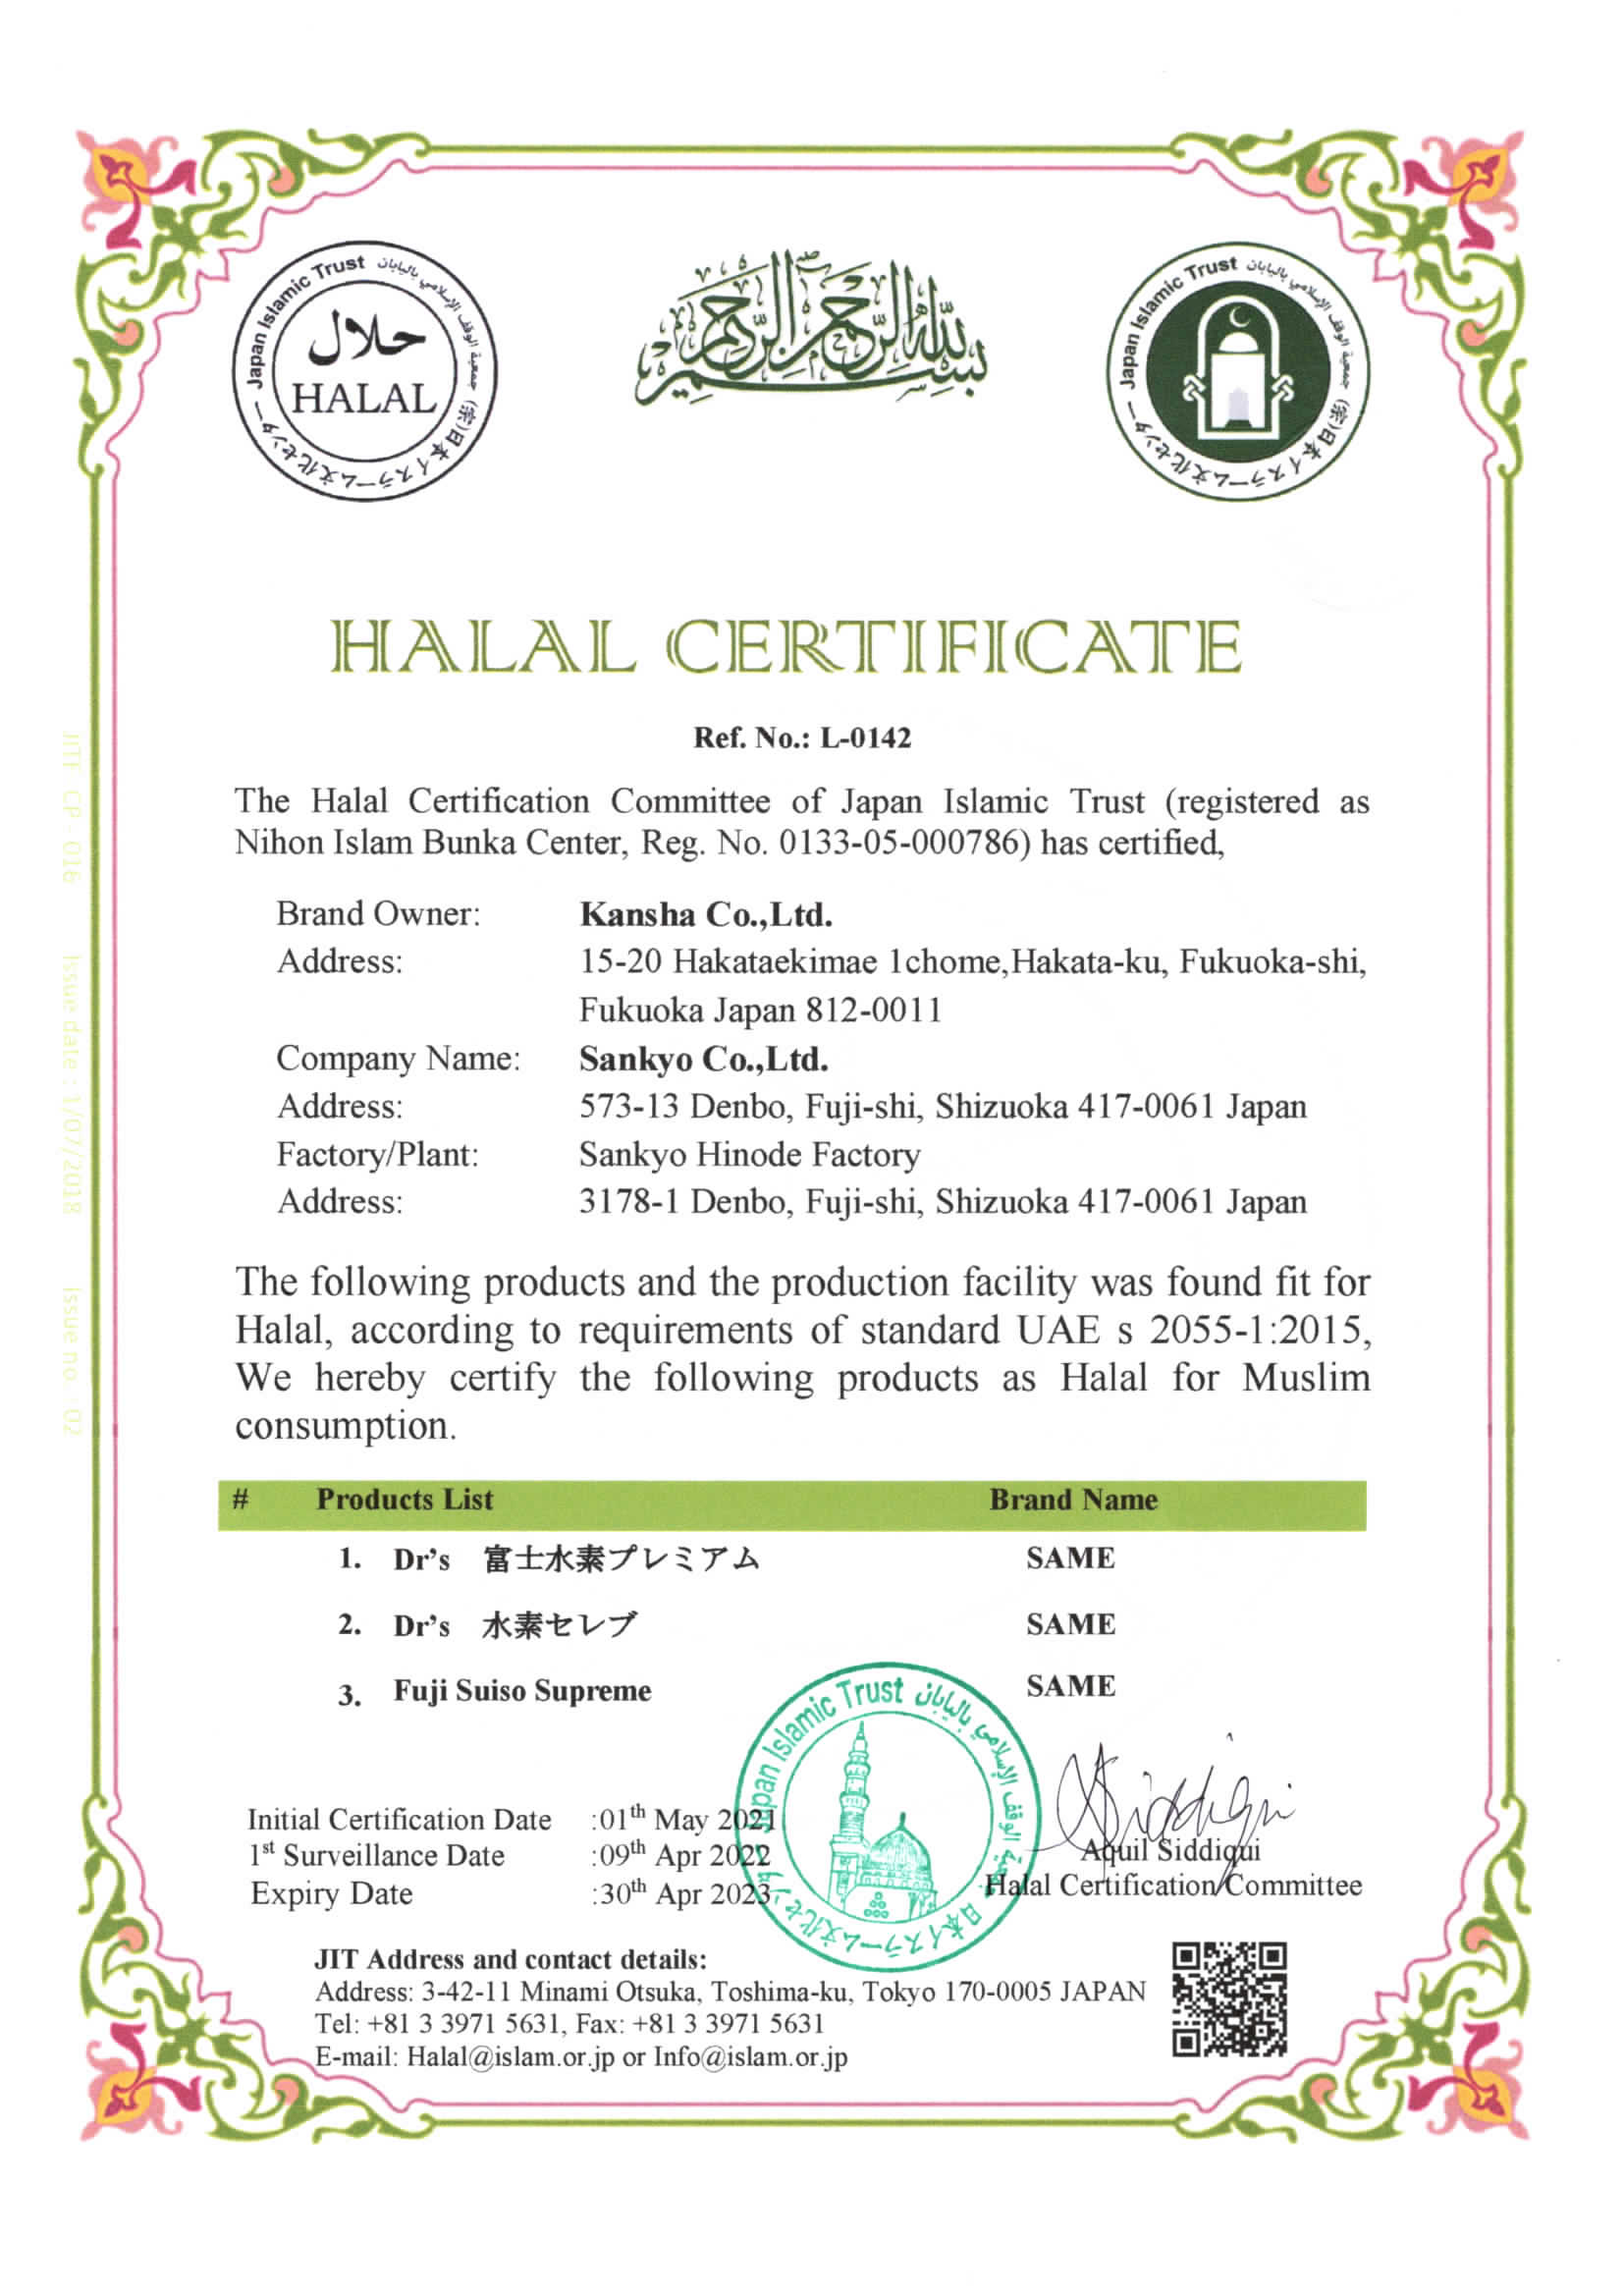 感謝株式会社のDr's(ドクターズ)富士水素は、ハラール認証を取得しました。